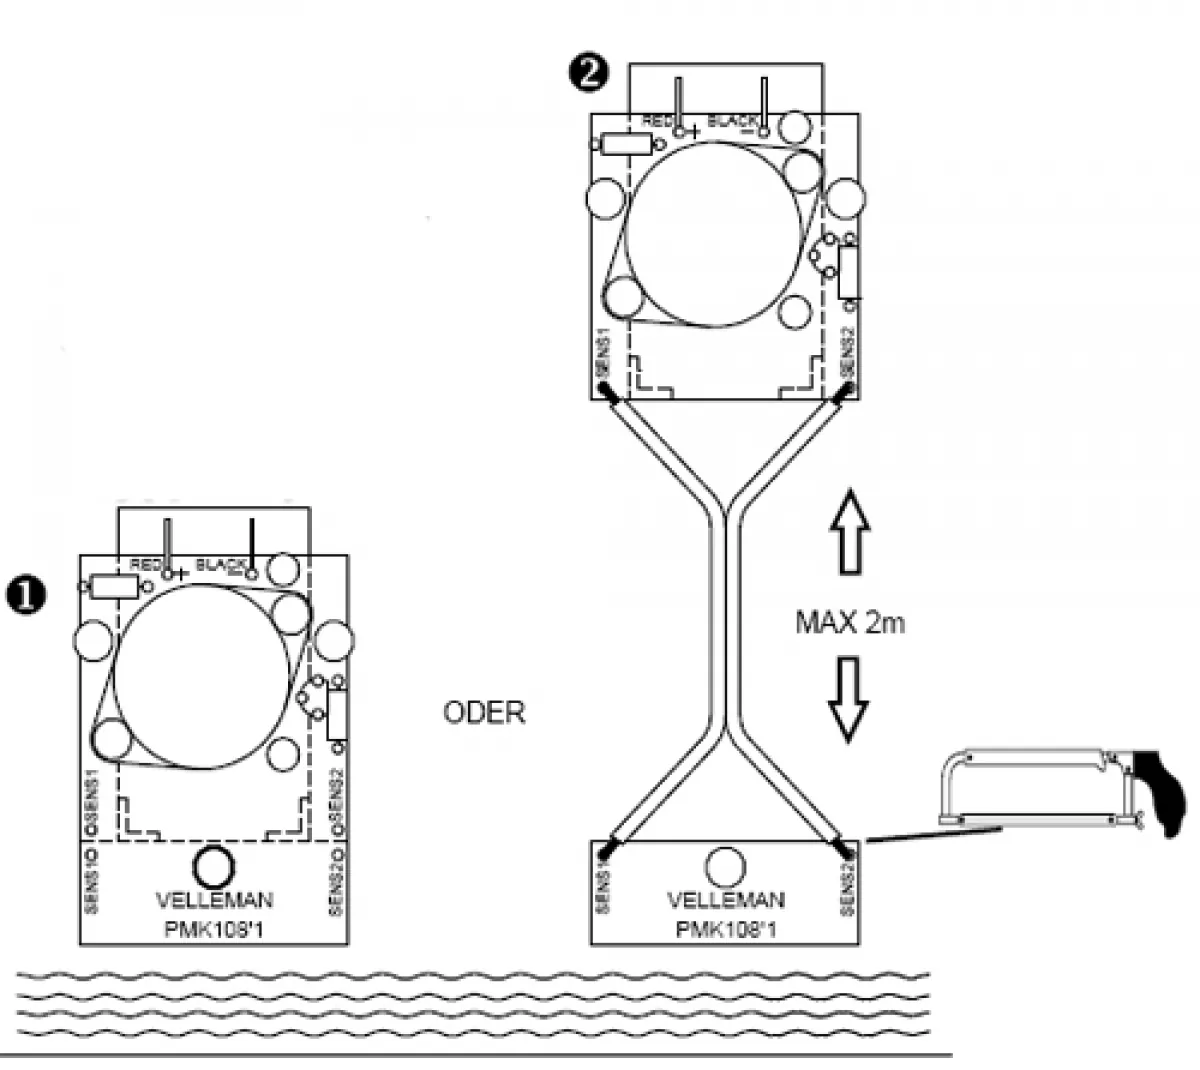 Wassermelder Wasseralarm 9V MK108 Velleman Bausatz WHADDA WSAA108